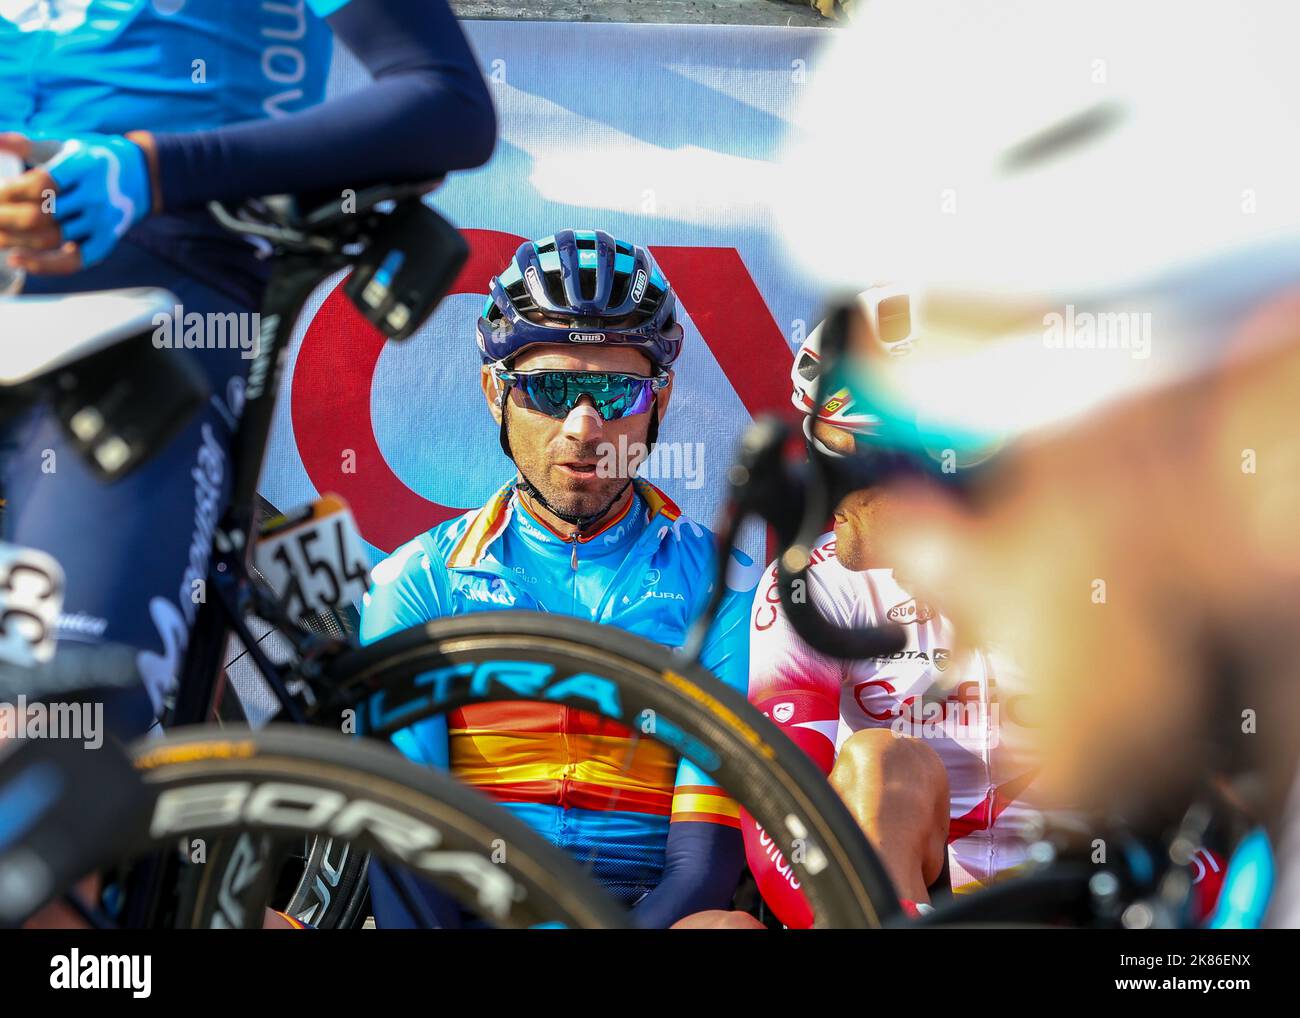 Alejandro Valverde vom Team Movistar beim Rennen Il Lombardia 2019 in Lombardia, Italien, am Samstag, 12. Oktober 2019. Stockfoto